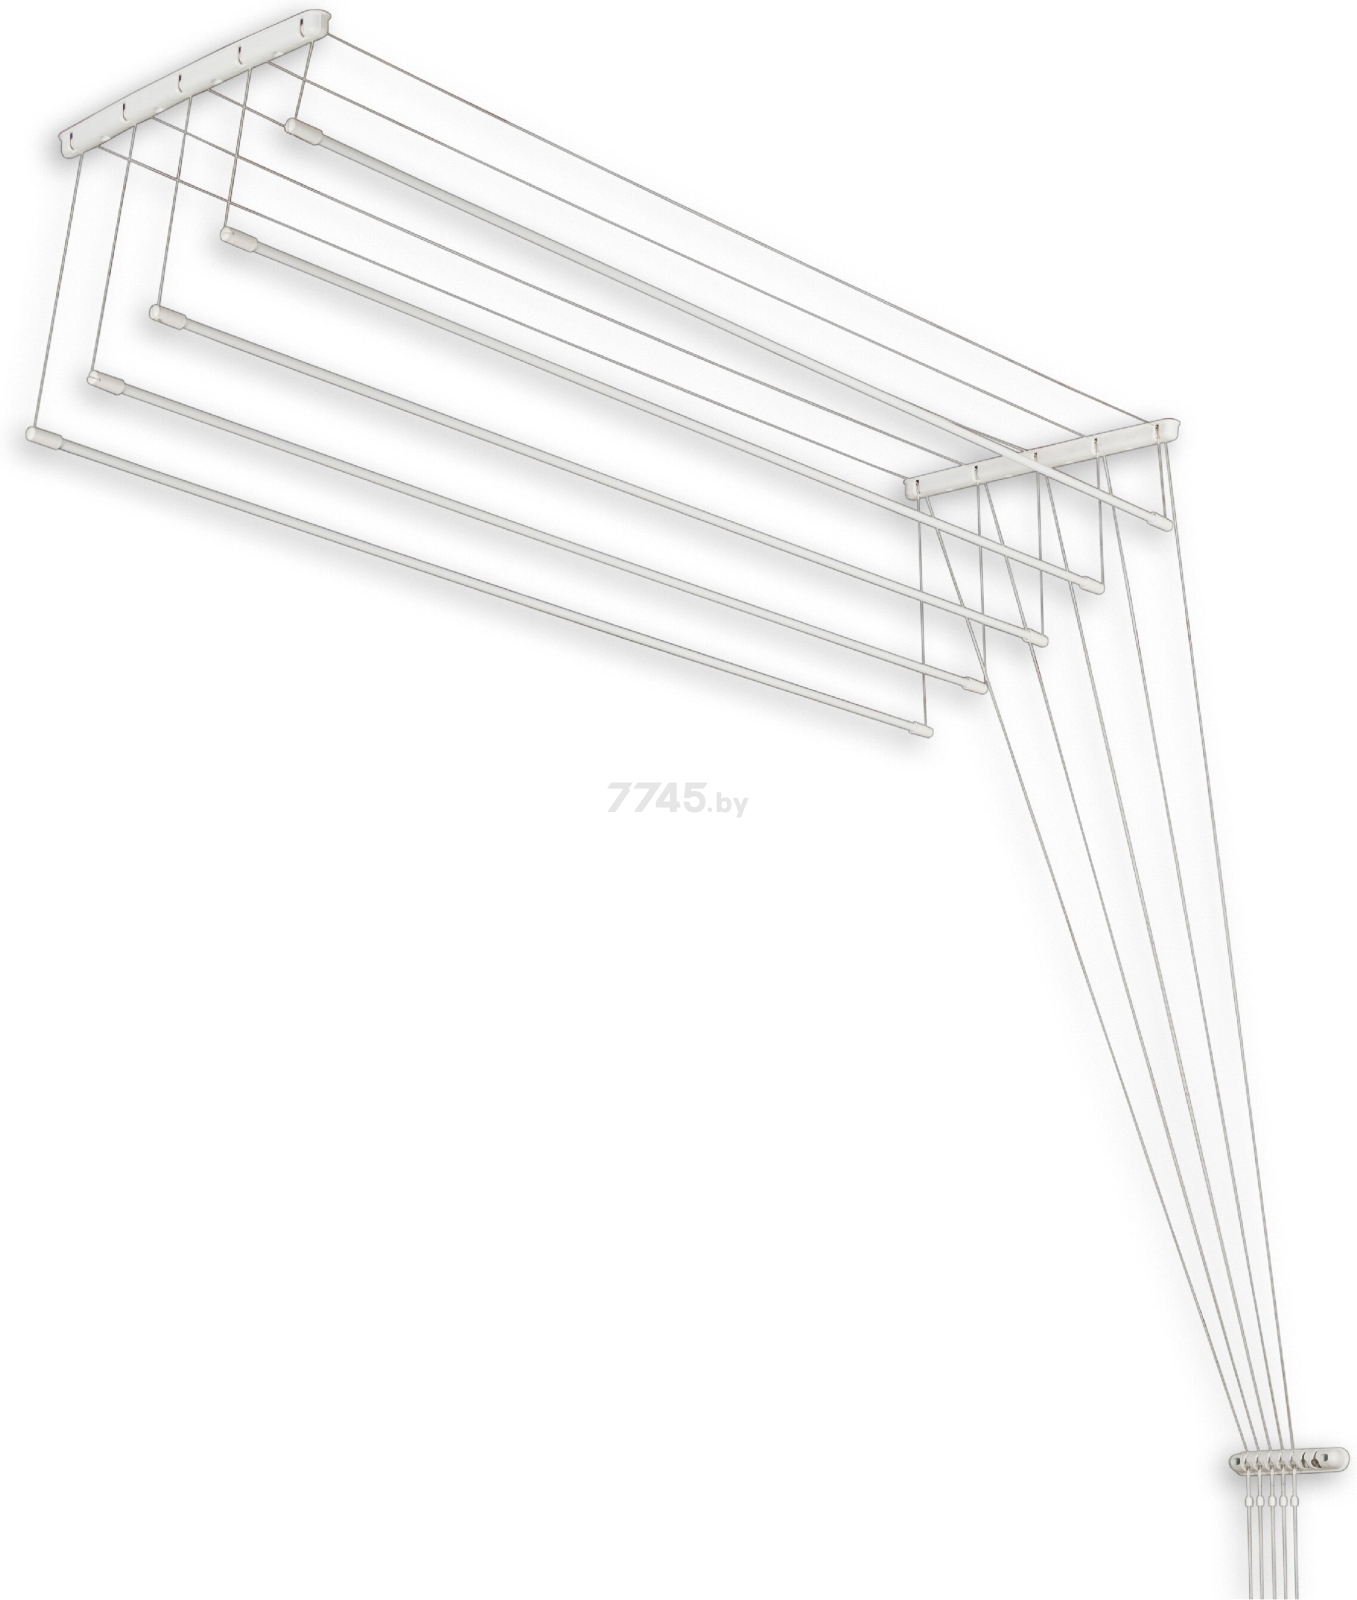 Сушилка для белья потолочная PERFECTO LINEA 2 м белая (36-002201)